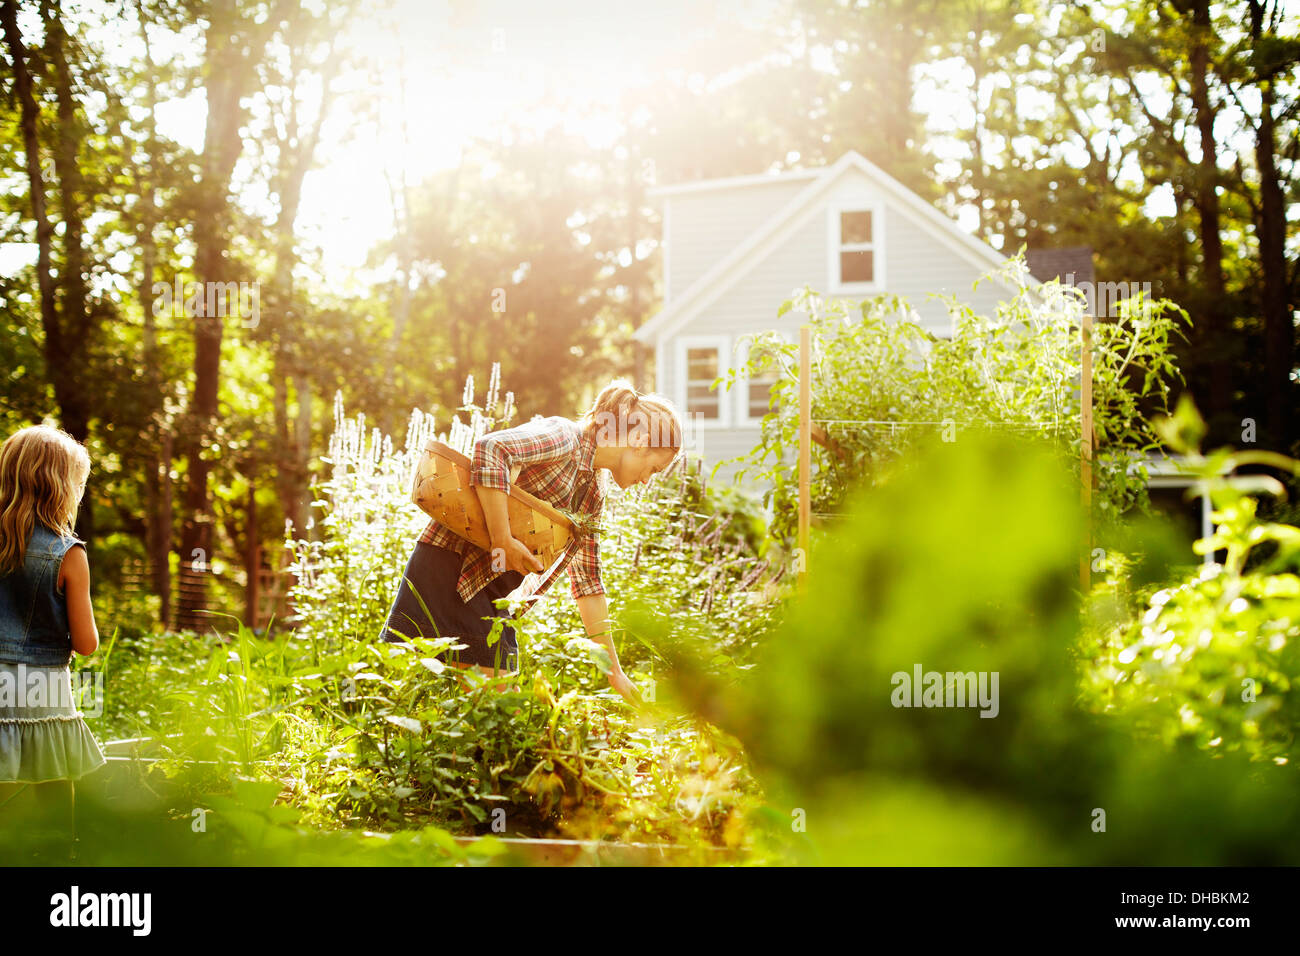 Eine Frau, die Kommissionierung Gemüse in einem Garten am Ende des Tages. Ein Kind, ein Spaziergang durch hohe Pflanzen. Stockfoto